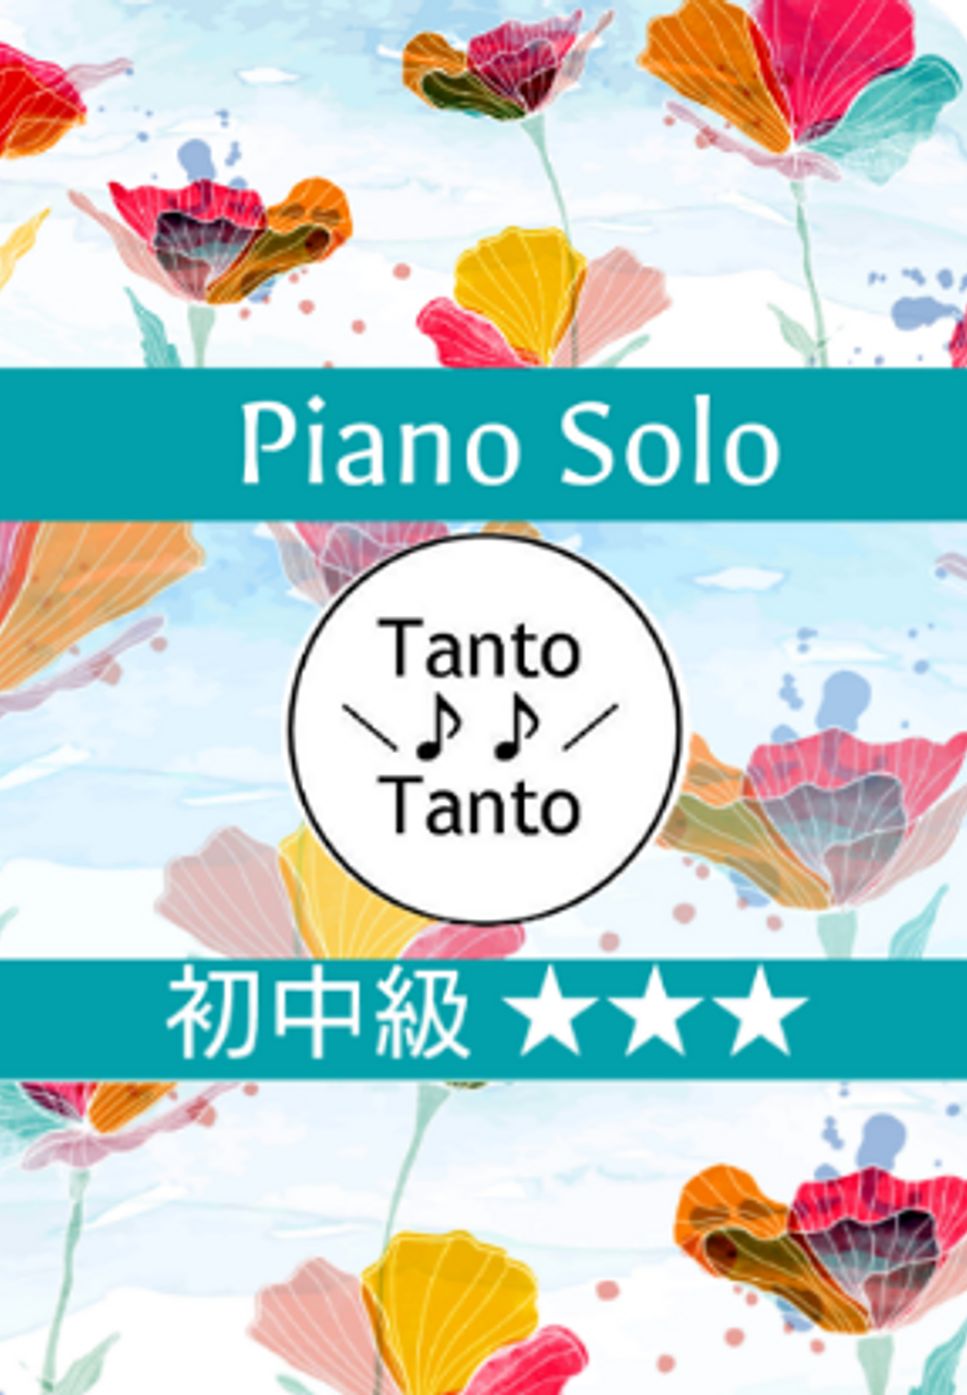 ジャック・オッフェンバック - 喜歌劇 天国と地獄 Can Can (初中級 Piano Solo in D) by Tanto Tanto